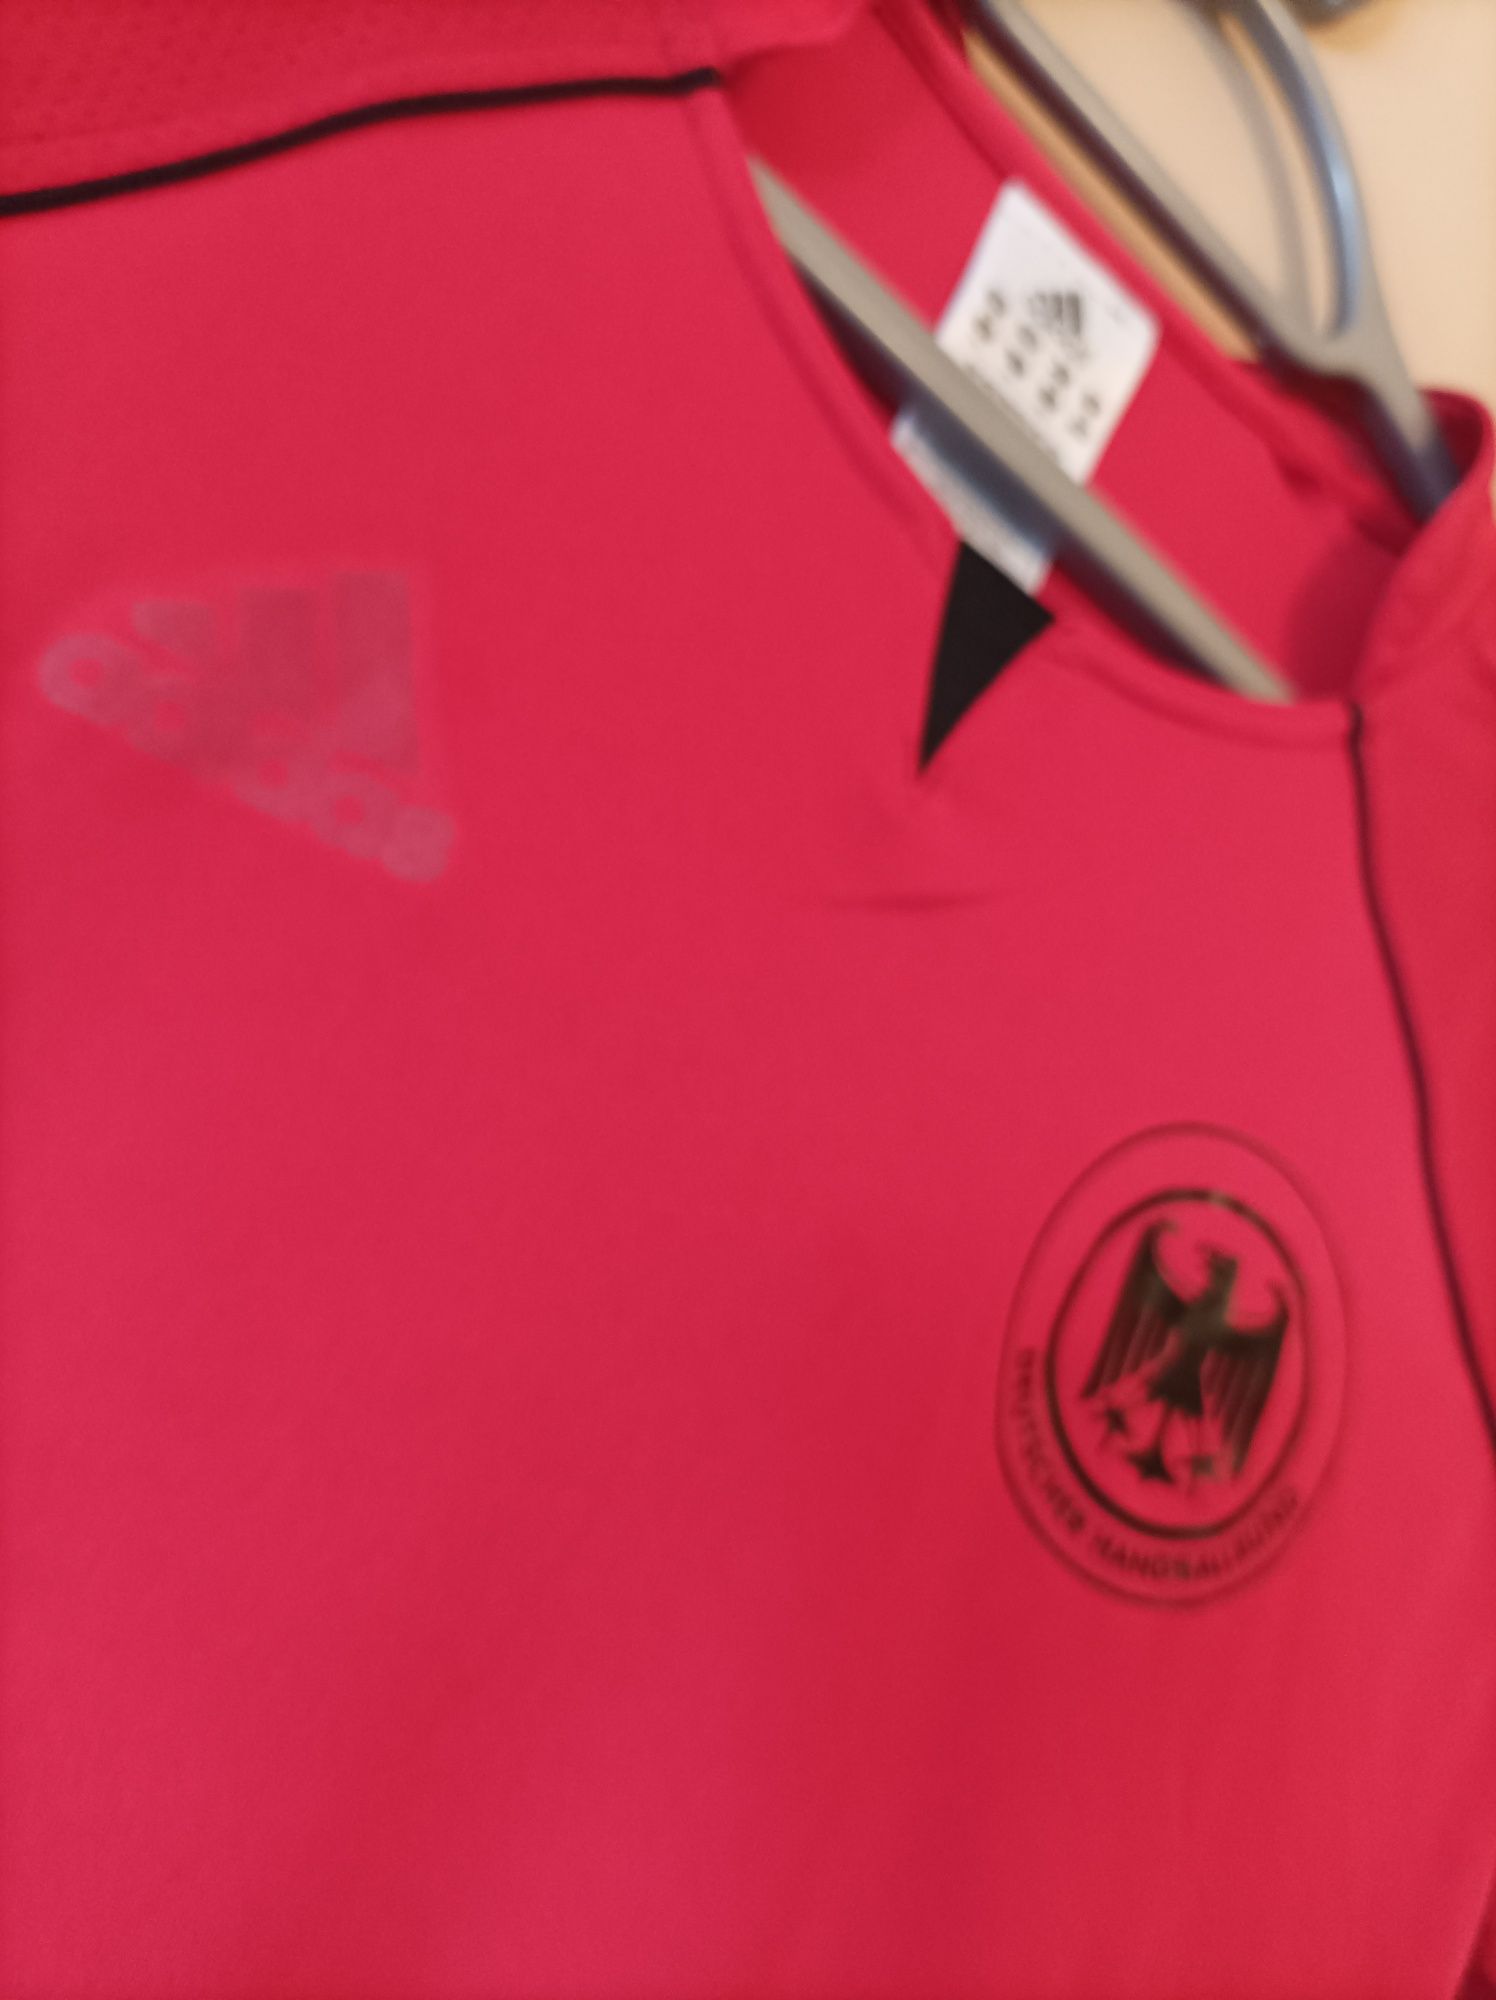 Koszulka adidas deutscher handballbund